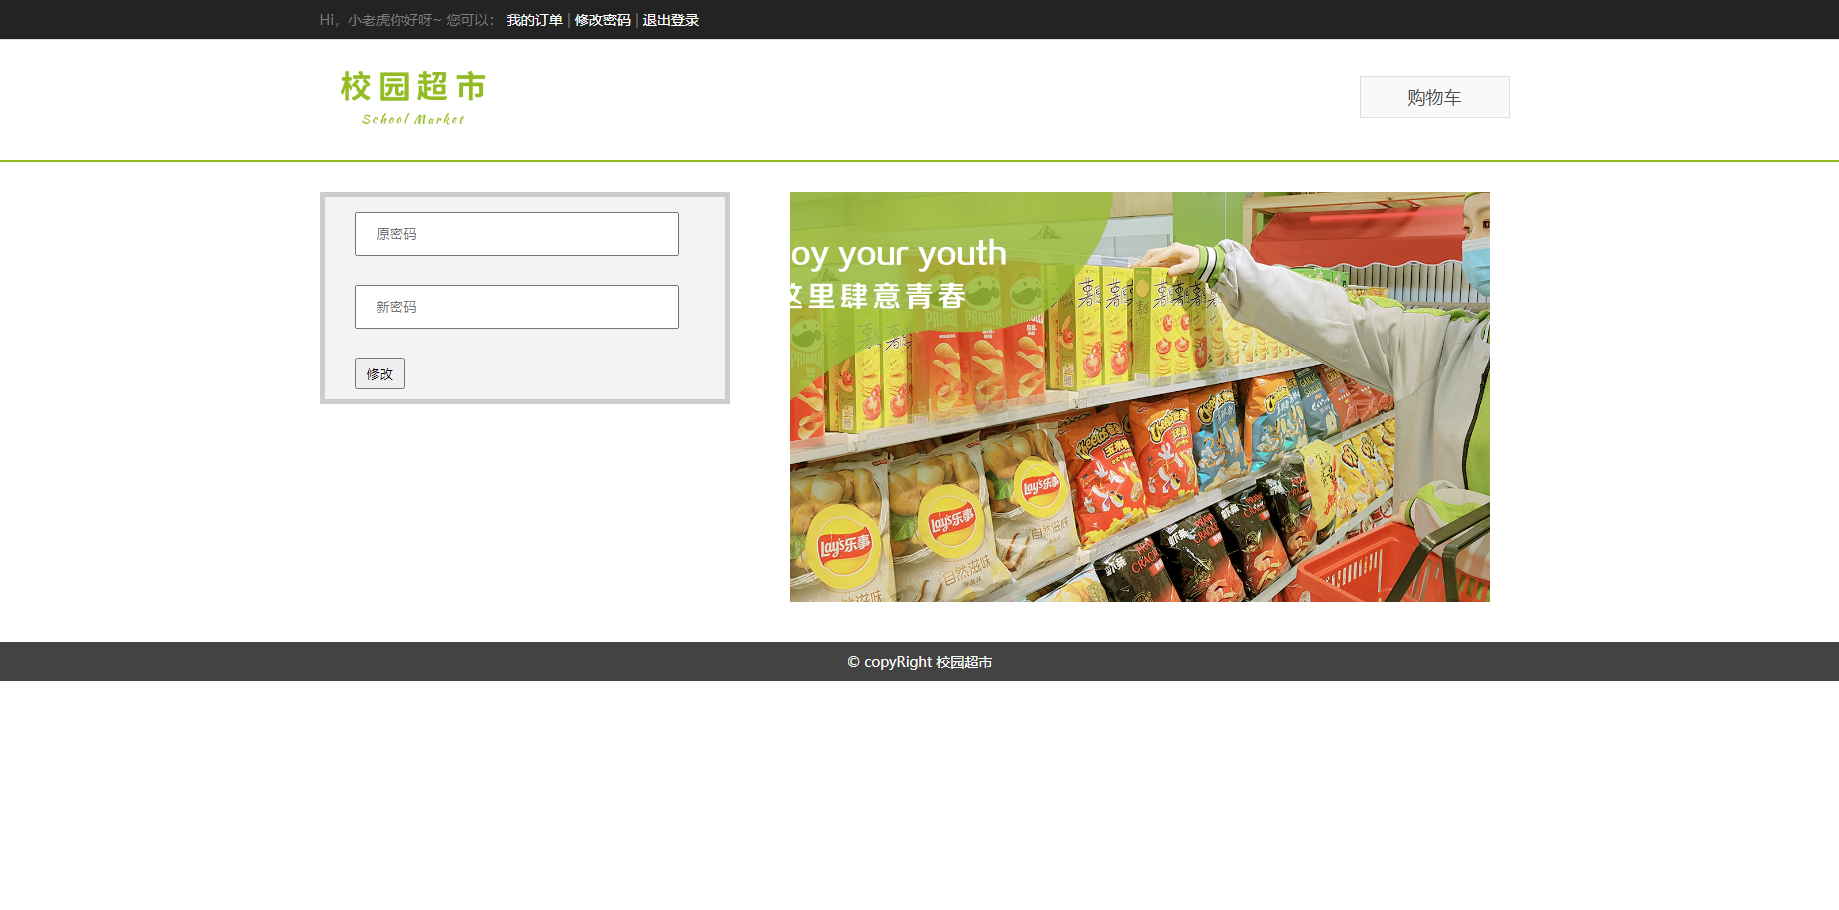 【php+mysql】校园超市商城网页带注册登陆购买订单发货 动态网页